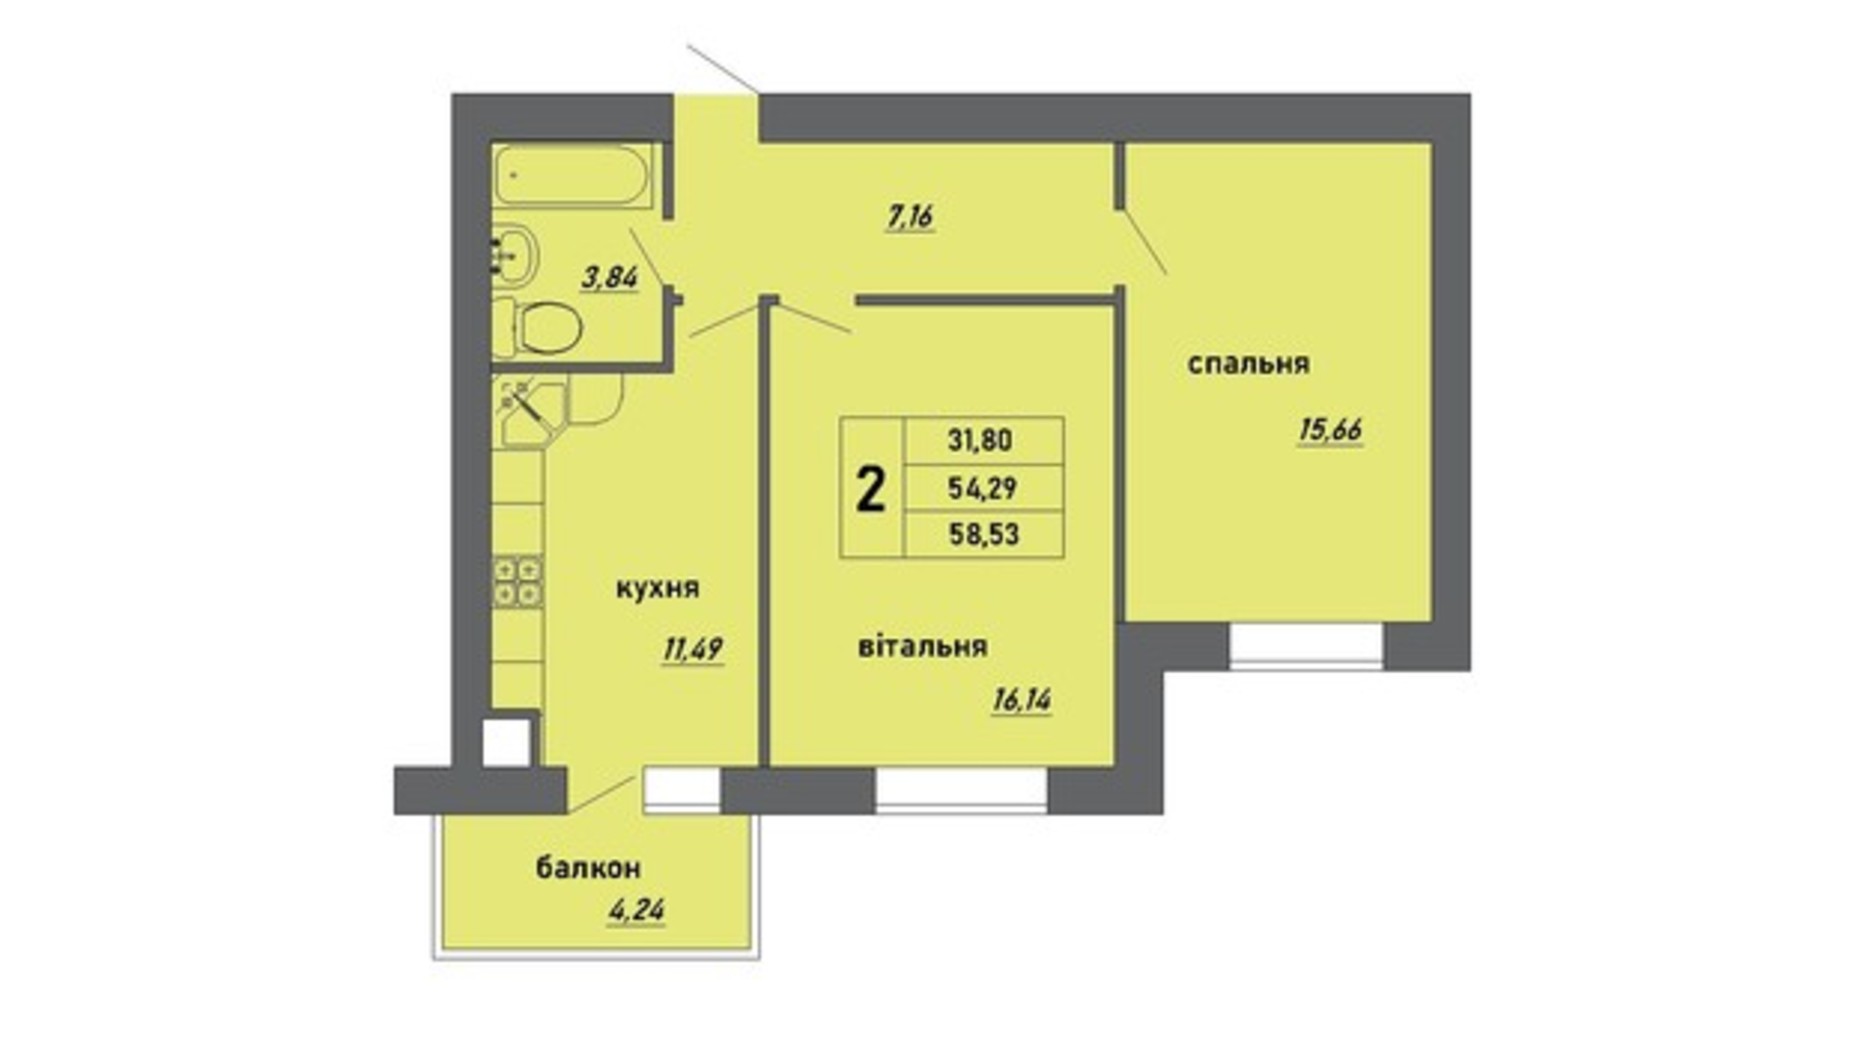 Планировка 2-комнатной квартиры в ЖК Новые Байковцы 58.53 м², фото 434129